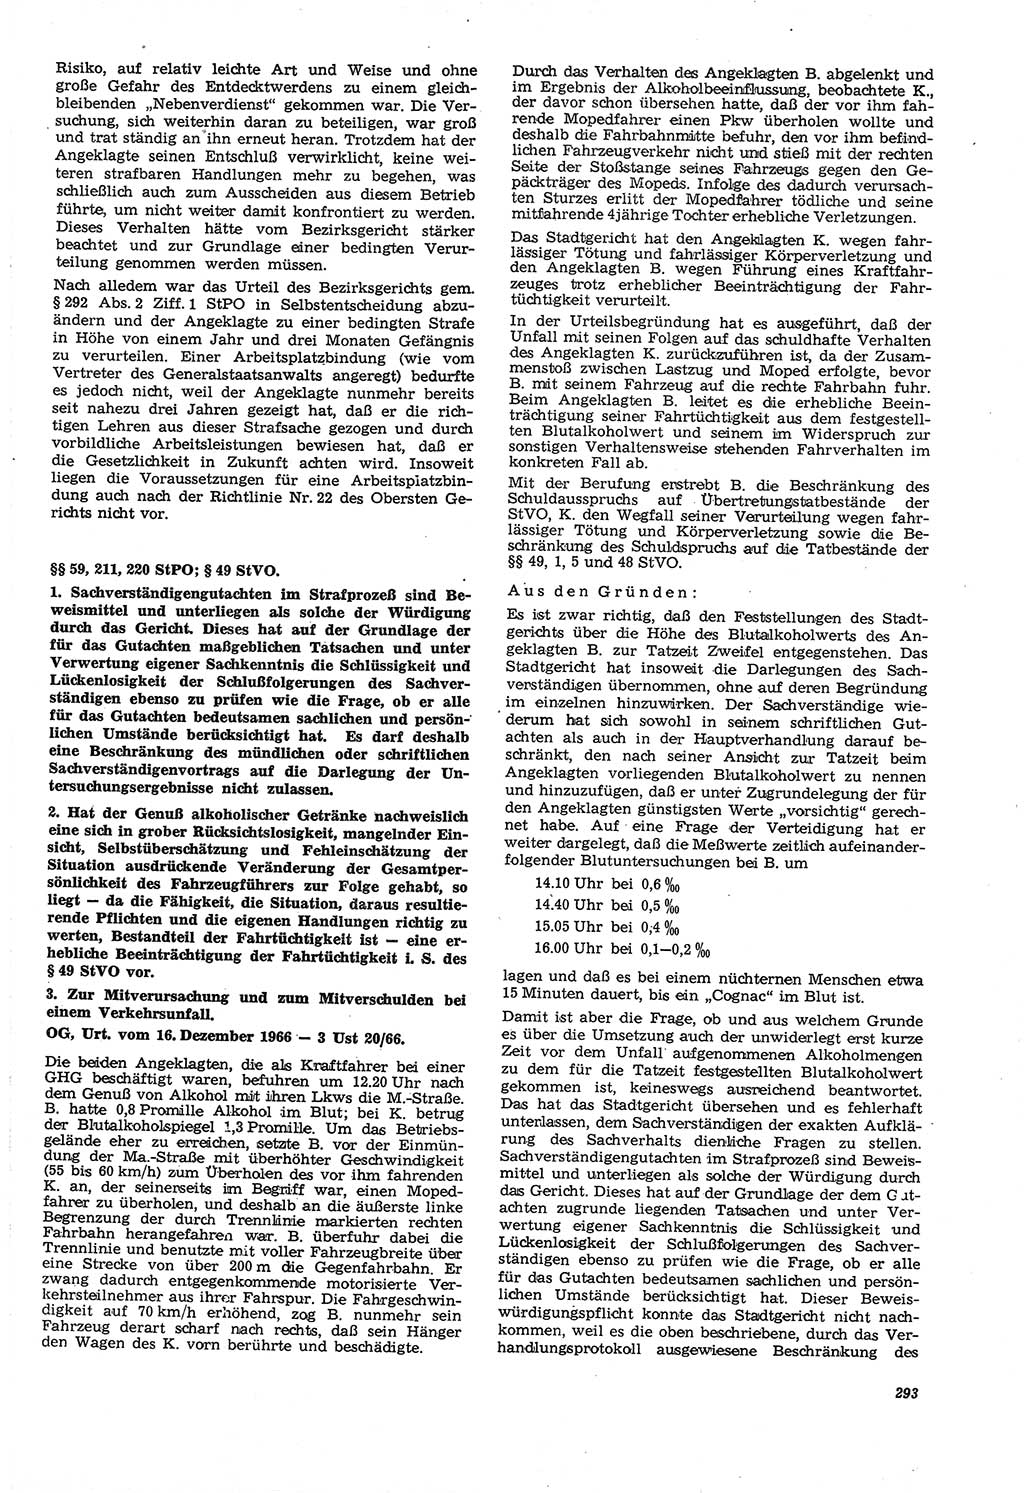 Neue Justiz (NJ), Zeitschrift für Recht und Rechtswissenschaft [Deutsche Demokratische Republik (DDR)], 21. Jahrgang 1967, Seite 293 (NJ DDR 1967, S. 293)